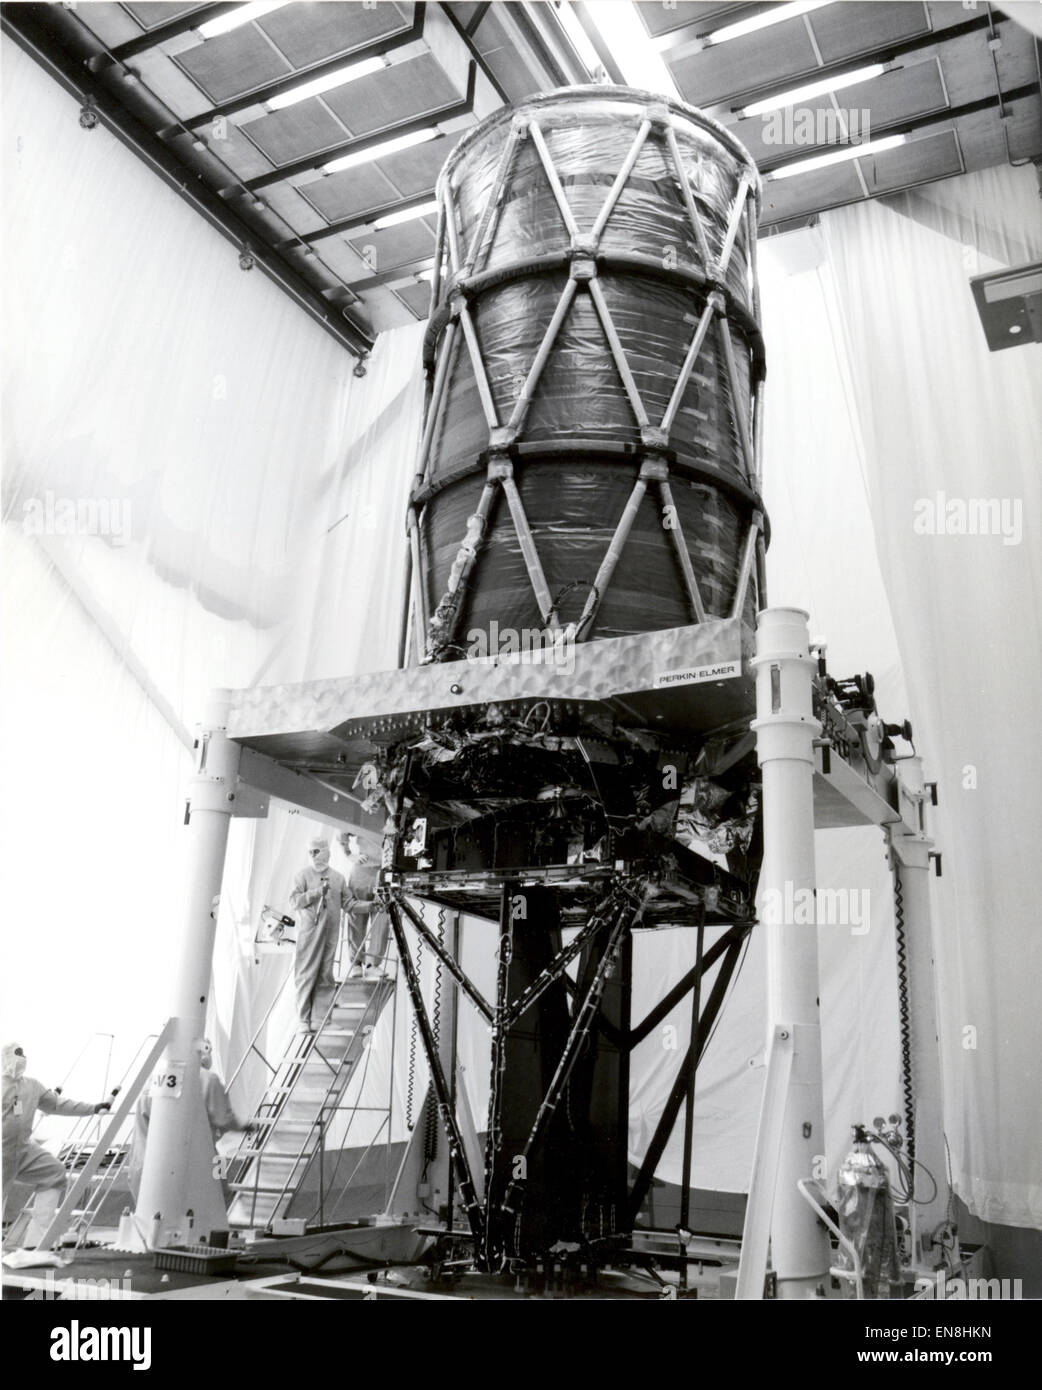 Dieses Foto zeigt das Weltraumteleskop Hubble fertigmontierten optische Teleskop Montage (OTA) im damaligen Perkin-Elmer-Werk in Danbury, Connecticut im Oktober 1984. Hubble Design besteht aus zwei hyperbolischen spiegeln, ein konkav und konvex, bei einer Anordnung, die eine lange Brennweite Teleskop zu einem kürzeren Schlauch Pakete eine. Sobald Prüfungen abgeschlossen wurden, würde die OTA von der NASA "Super Guppy" Transportflugzeug Lockheed Sunnyvale, Kalifornien, Werk für die weitere Montage und Prüfung Prüfung geflogen werden. (NASA/MSFC Bild) Stockfoto